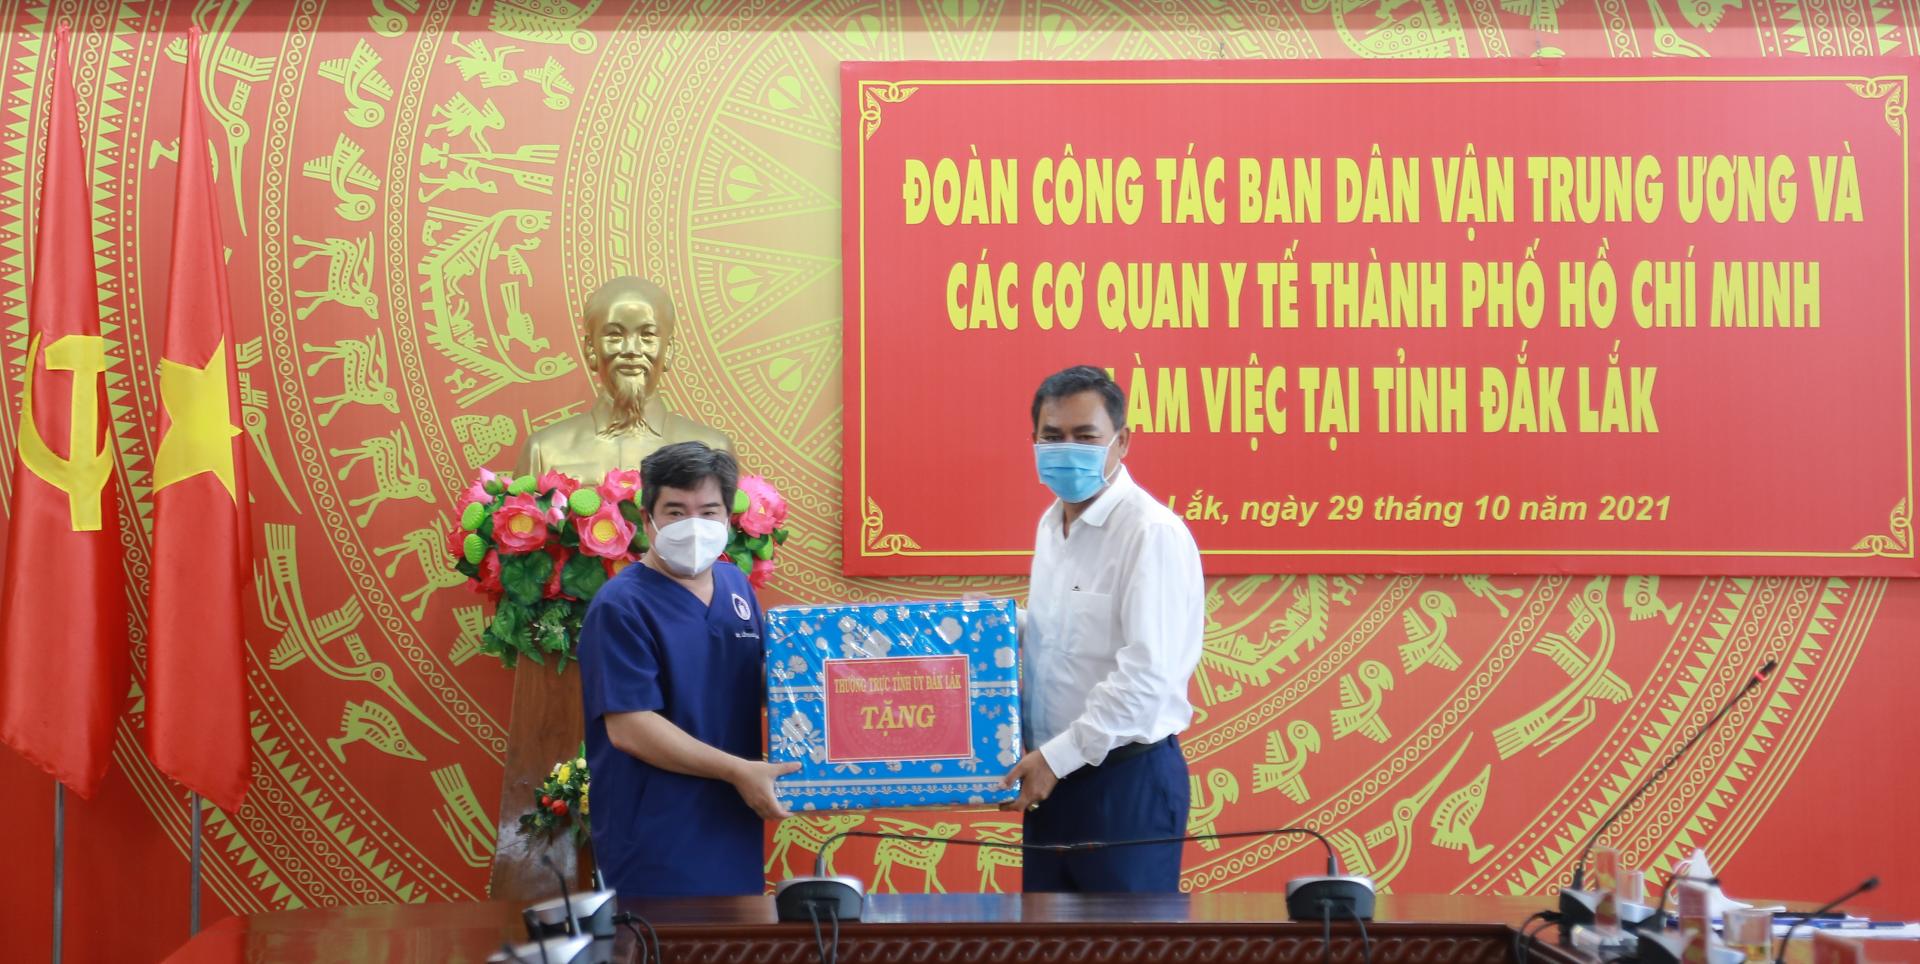 Đoàn công tác của Ban Dân vận Trung ương và các cơ quan y tế TP. Hồ Chí Minh làm việc tại tỉnh